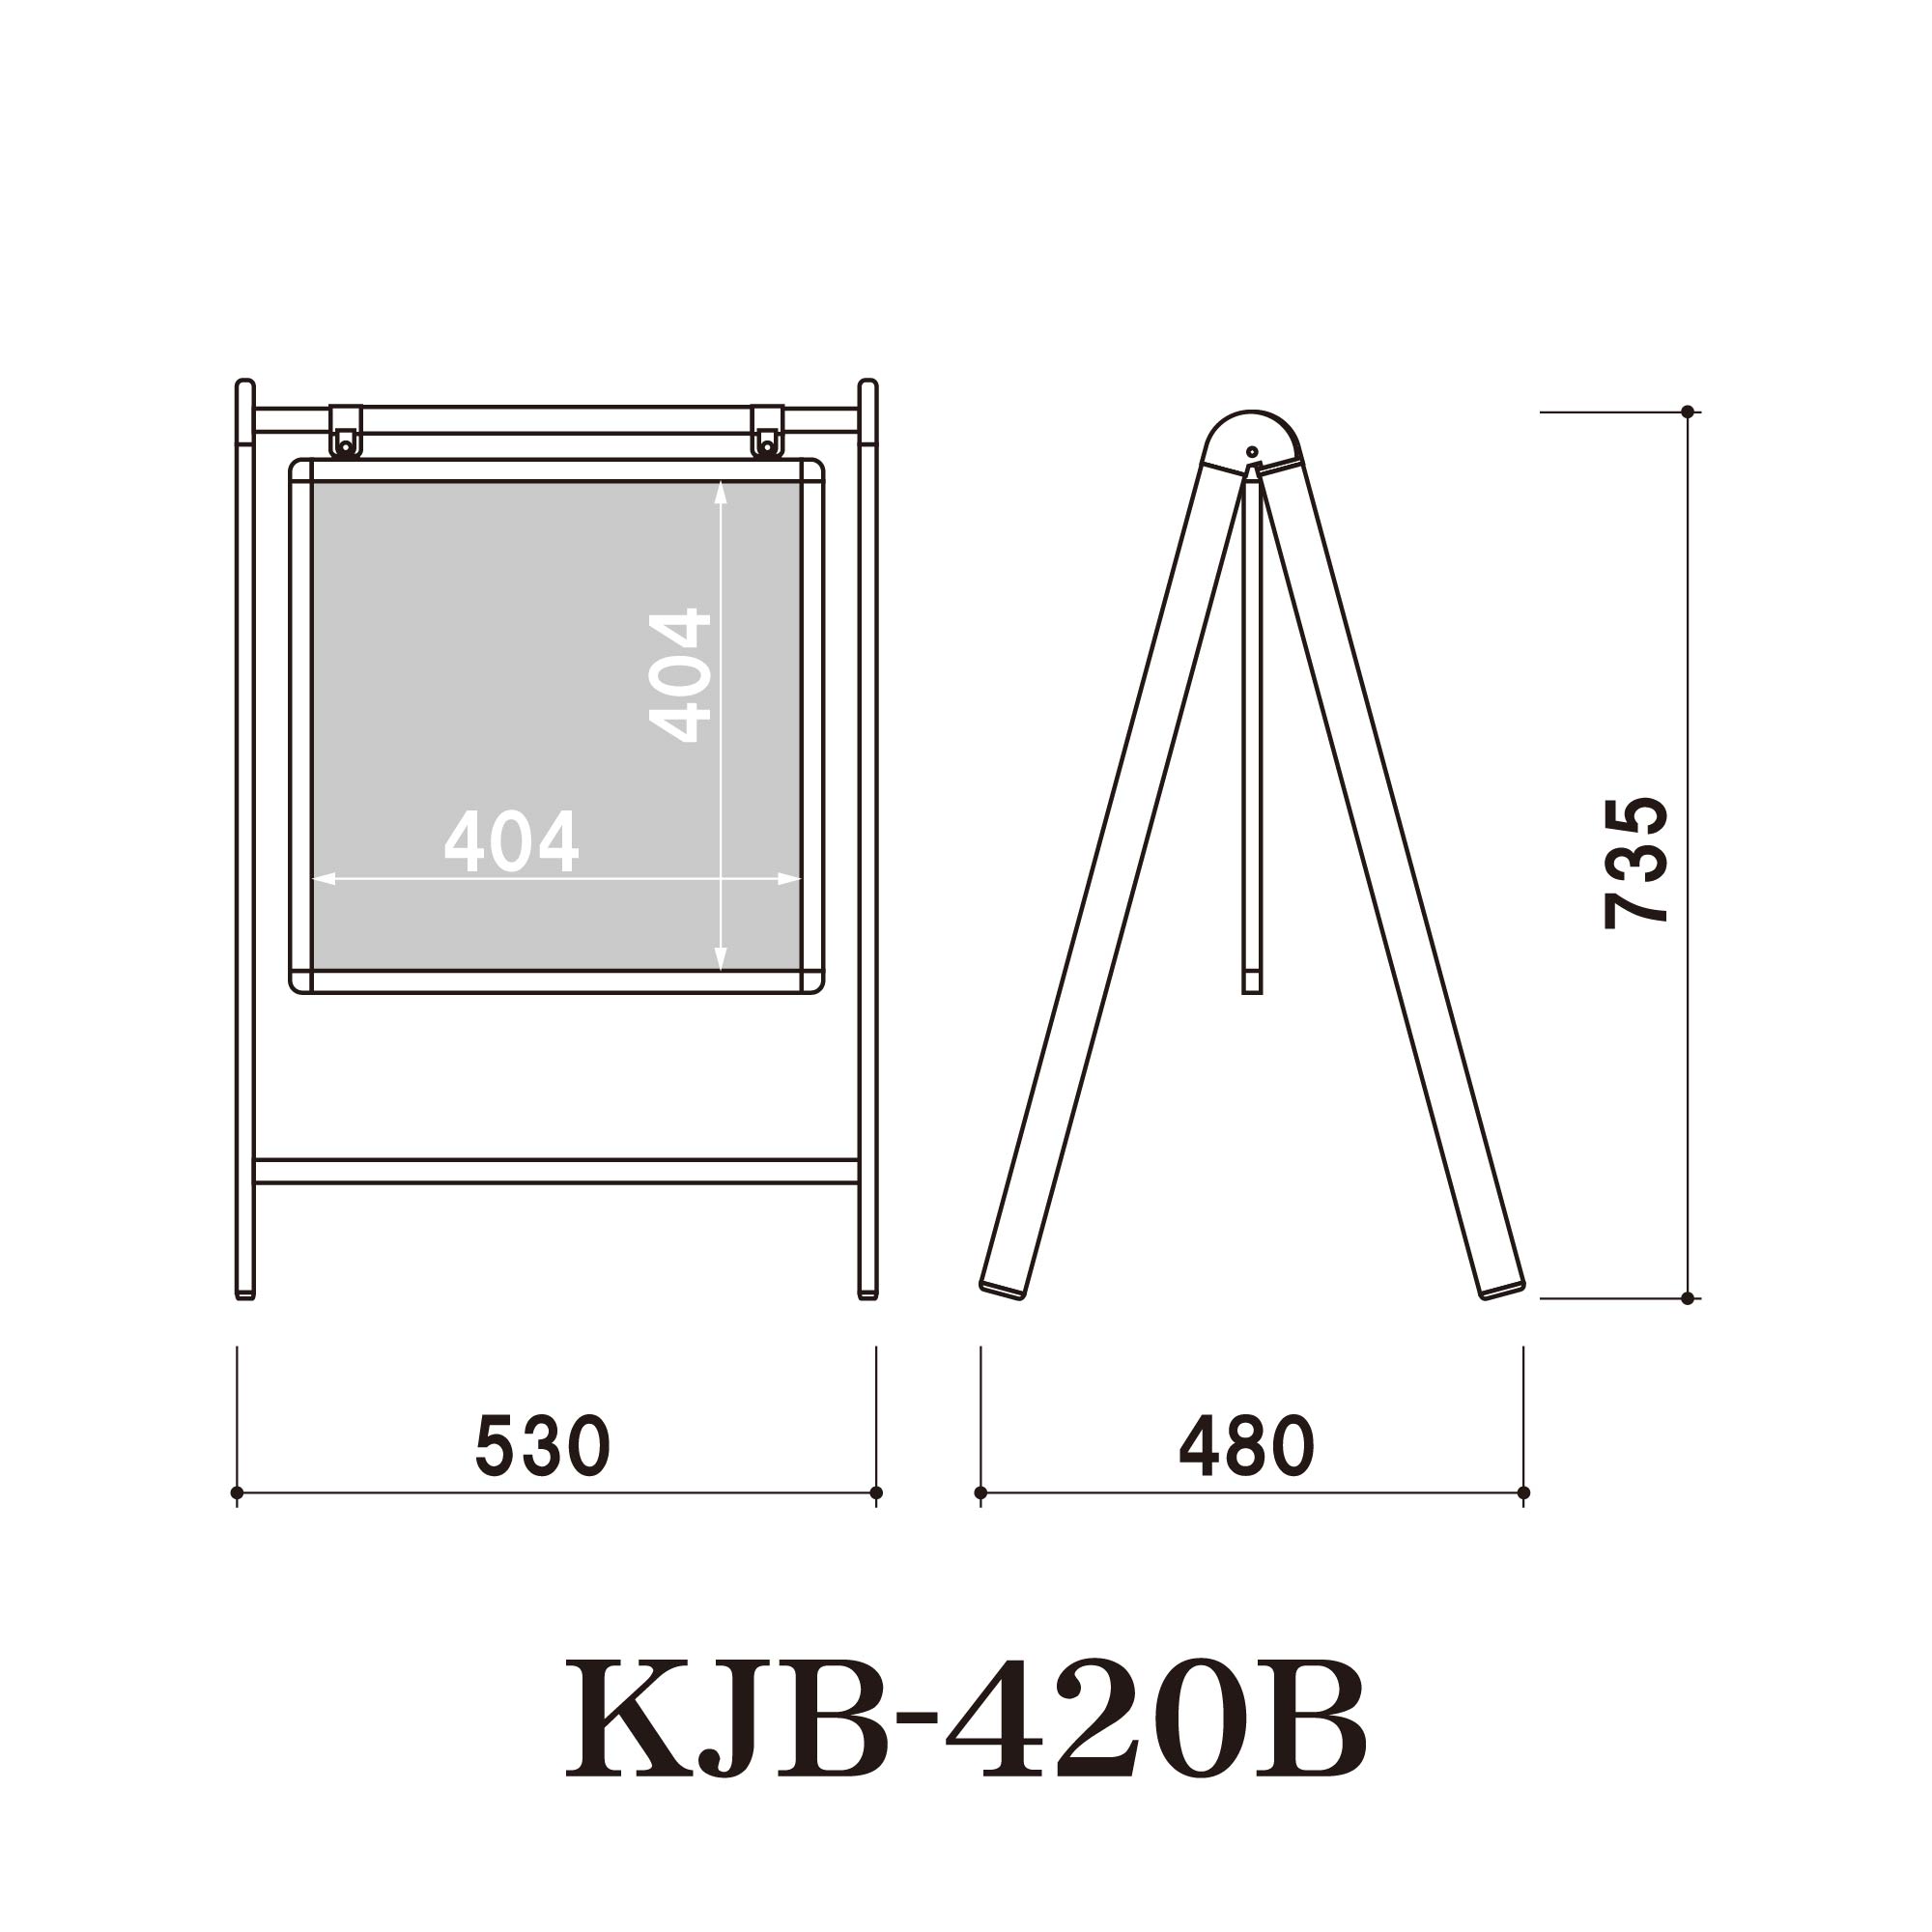 ブラックボードサイン KJB-420B (KJB-420B) スタンド看板・立て看板  折りたたみ,おしゃれ,かわいい,チョーク,店頭,ウェルカムボード,メニュー黒板,磁石,マグネット 看板の激安通販ならサインウェブ